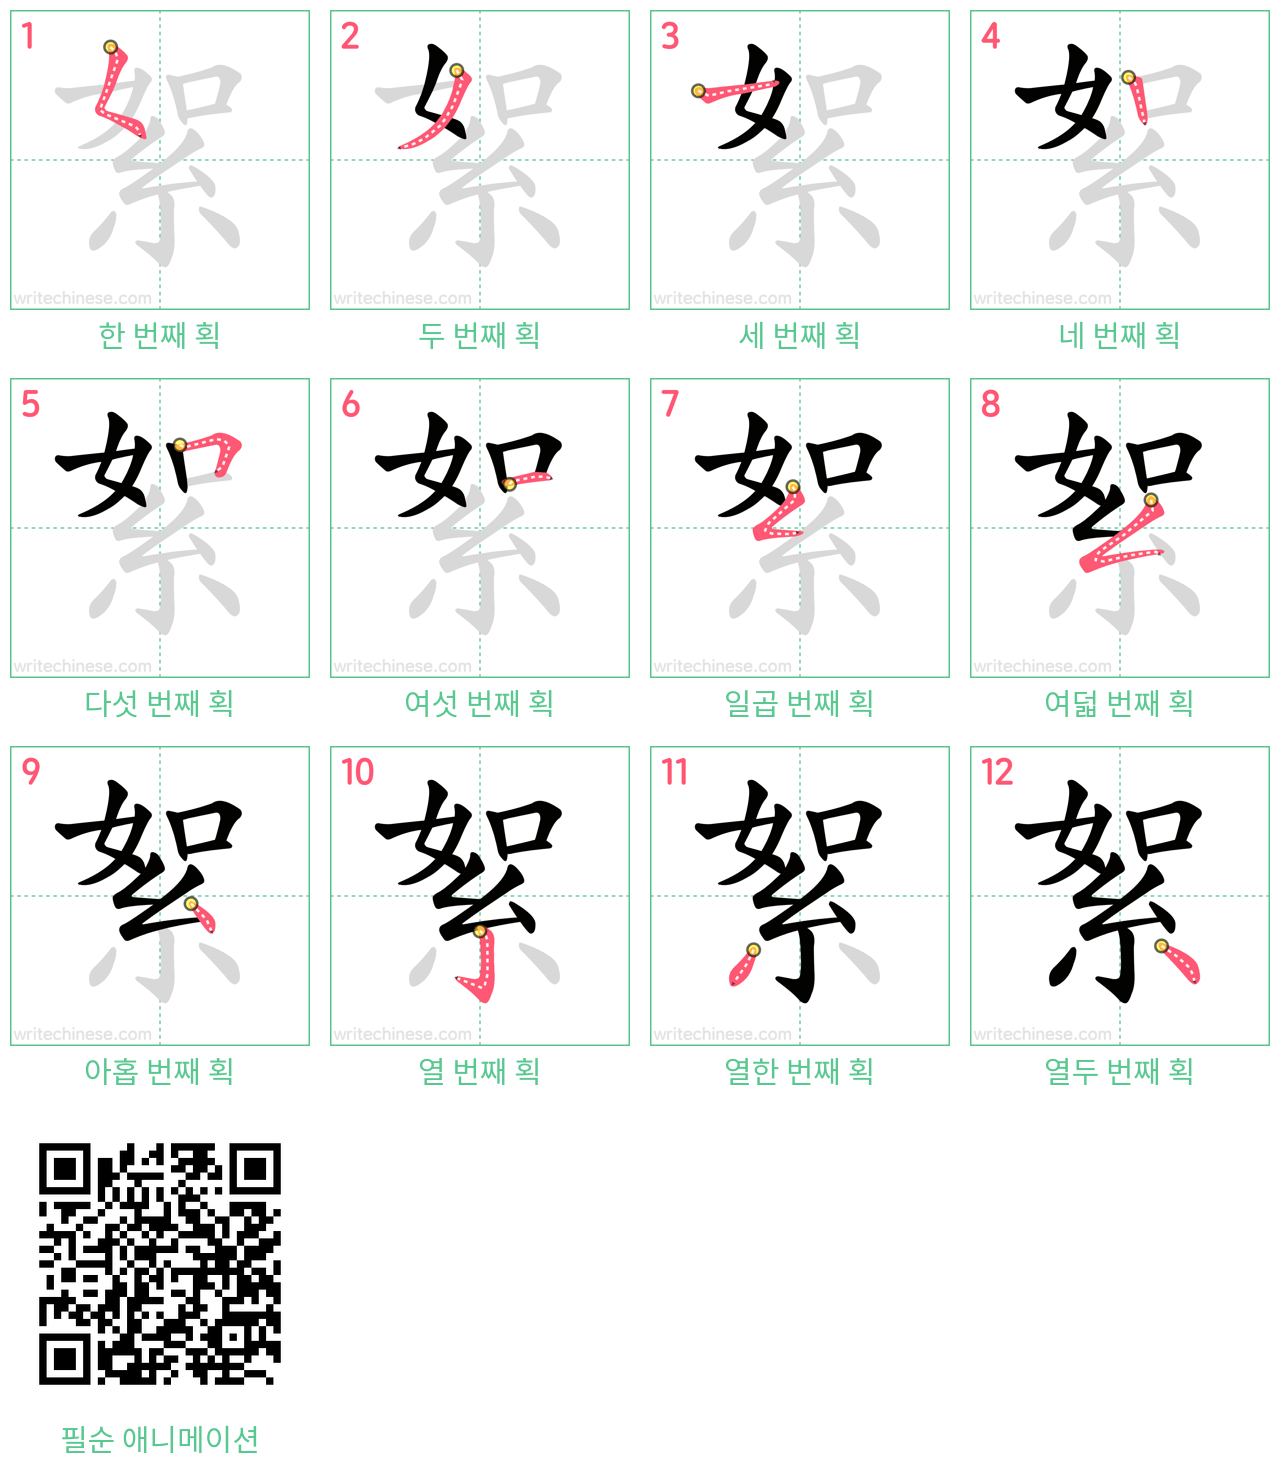 絮 step-by-step stroke order diagrams